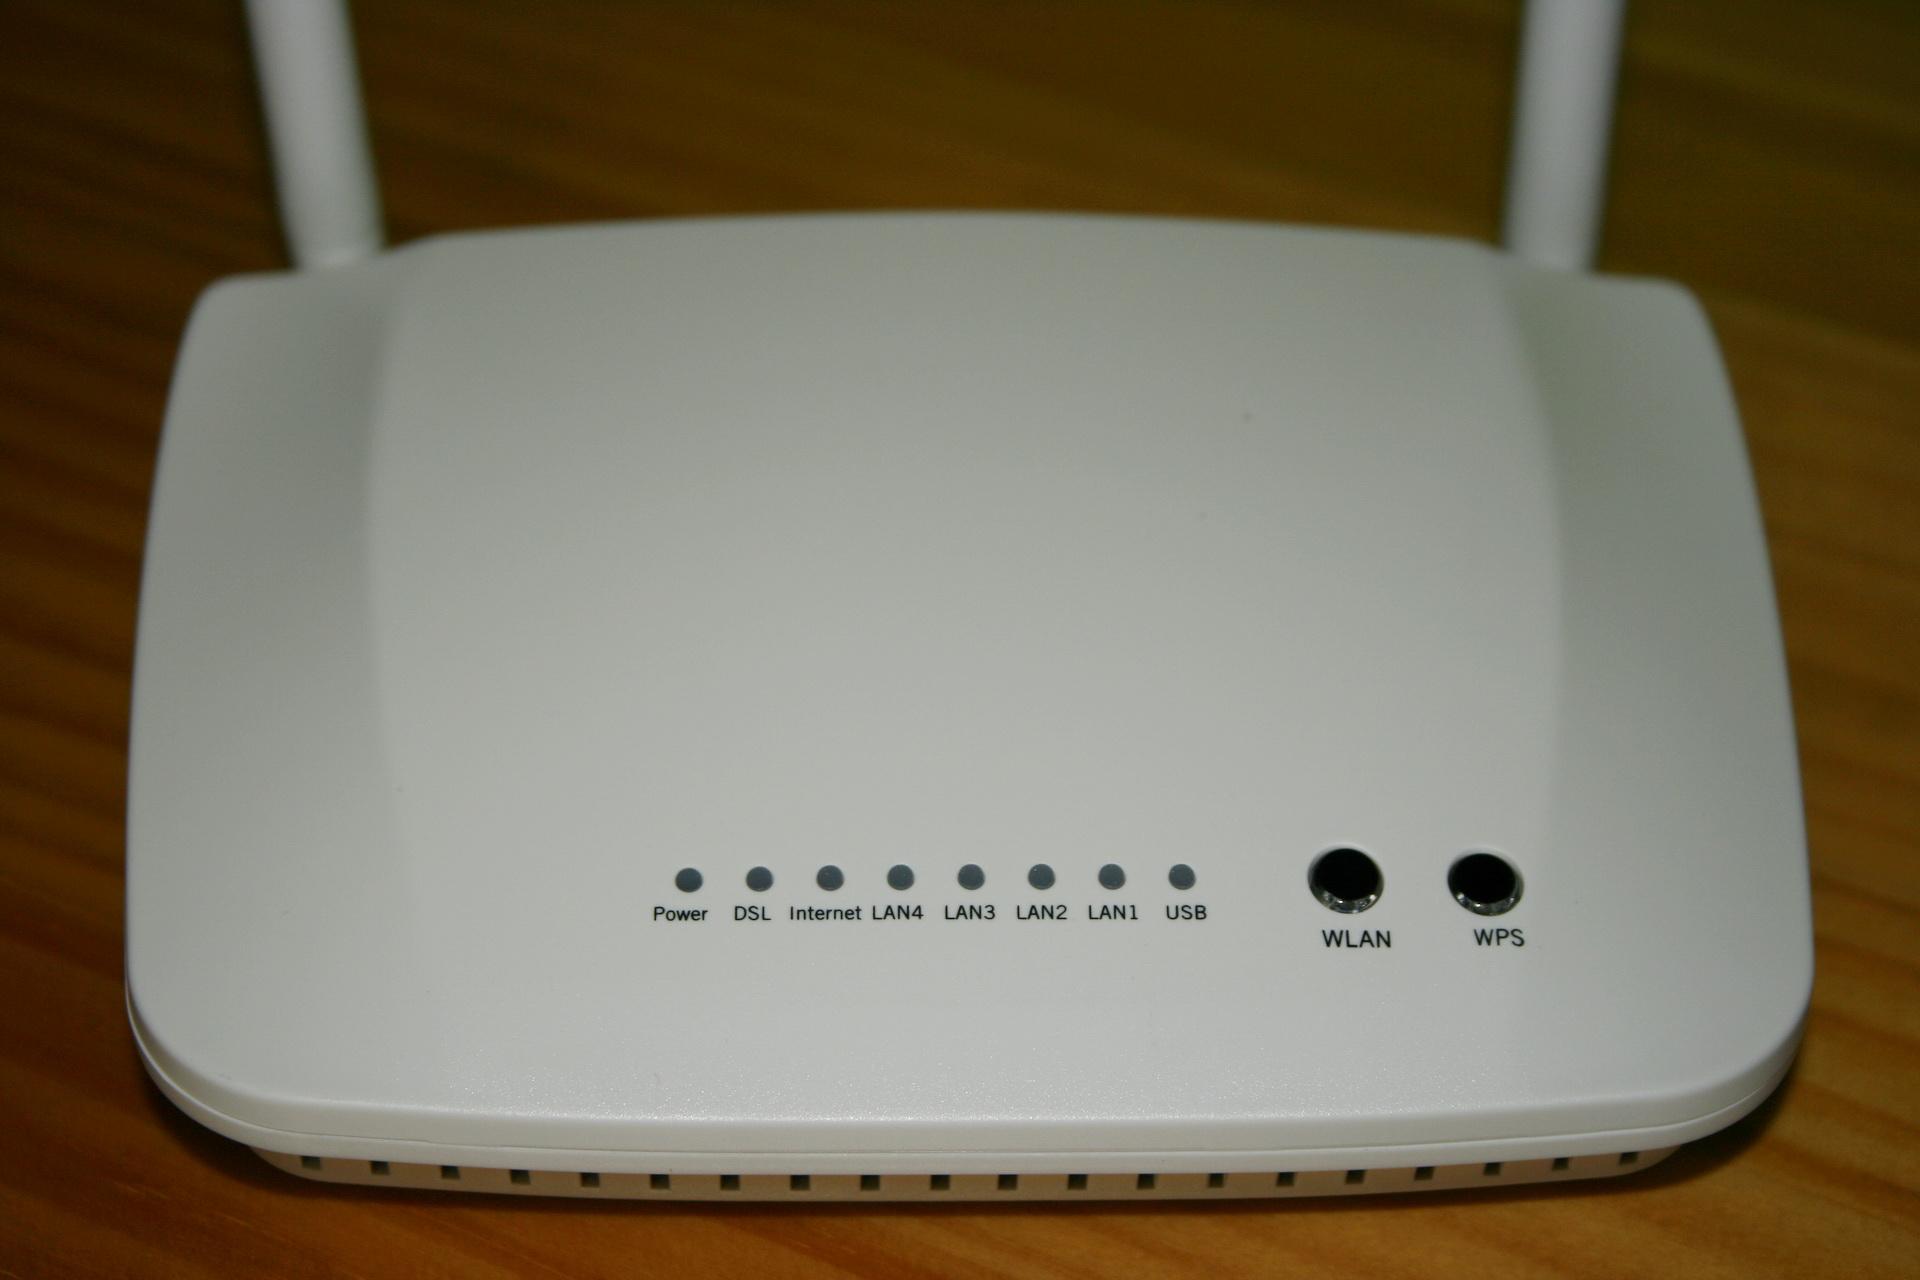 Vista frontal del router Nucom R5500UN con todos los LEDs y botones de estado